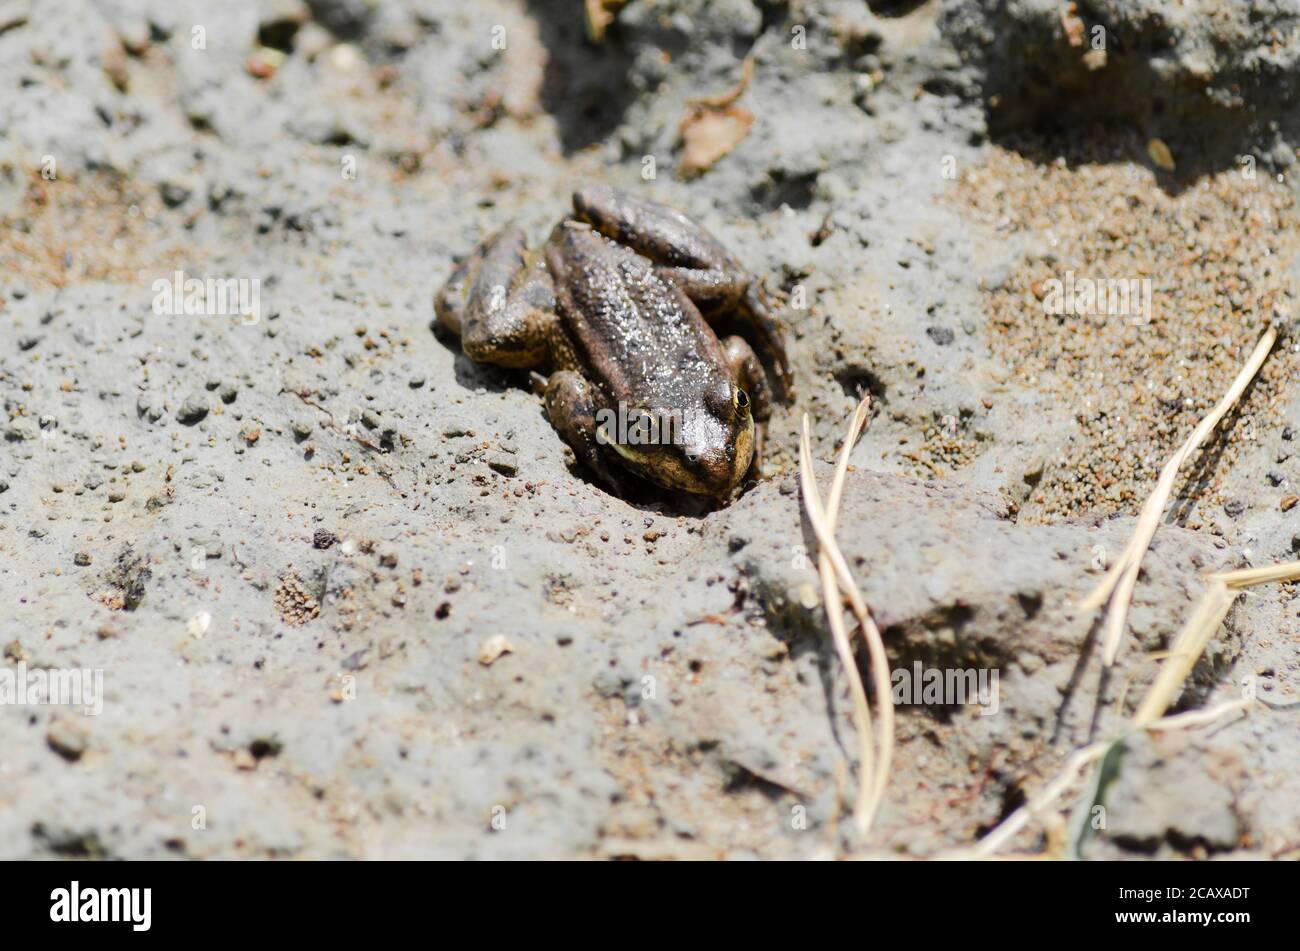 Une petite grenouille brune est posée sur le sable humide lors d'une journée ensoleillée. Mise au point sélective Banque D'Images